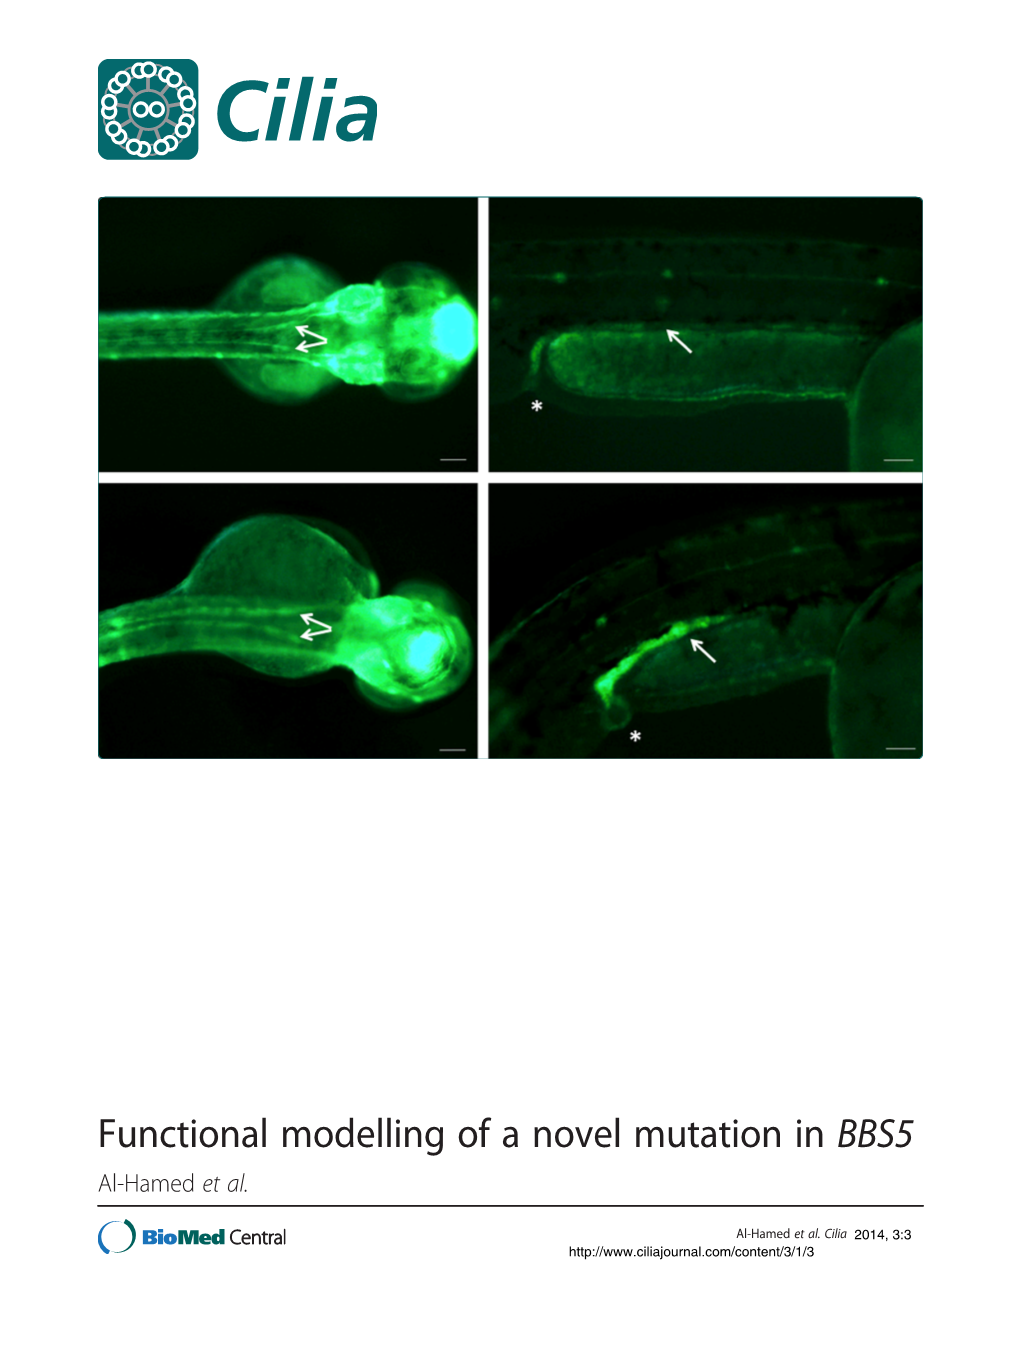 Functional Modelling of a Novel Mutation in BBS5 Al-Hamed Et Al